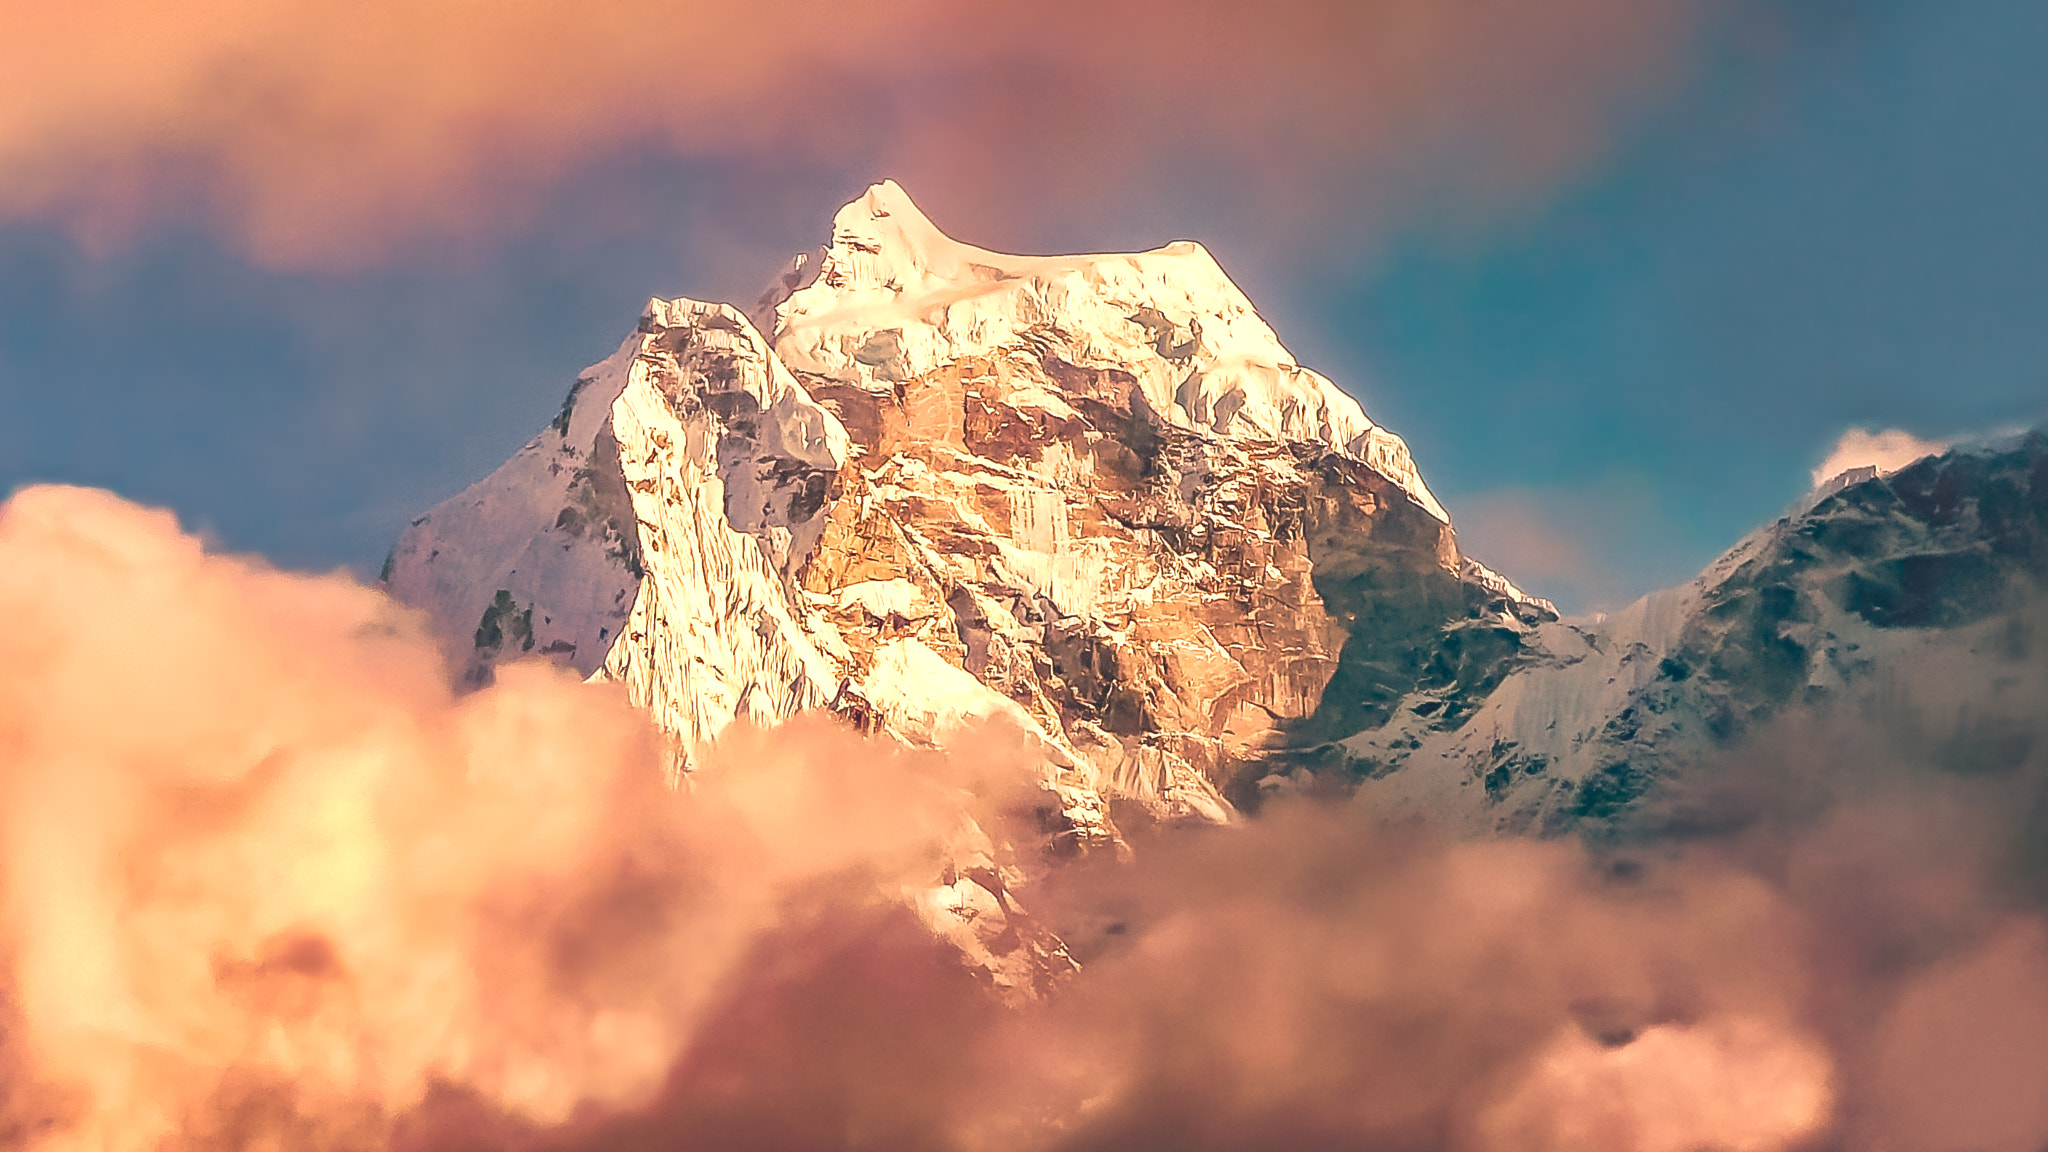 Panasonic DMC-TZ2 sample photo. Himalayan peak at sunset photography